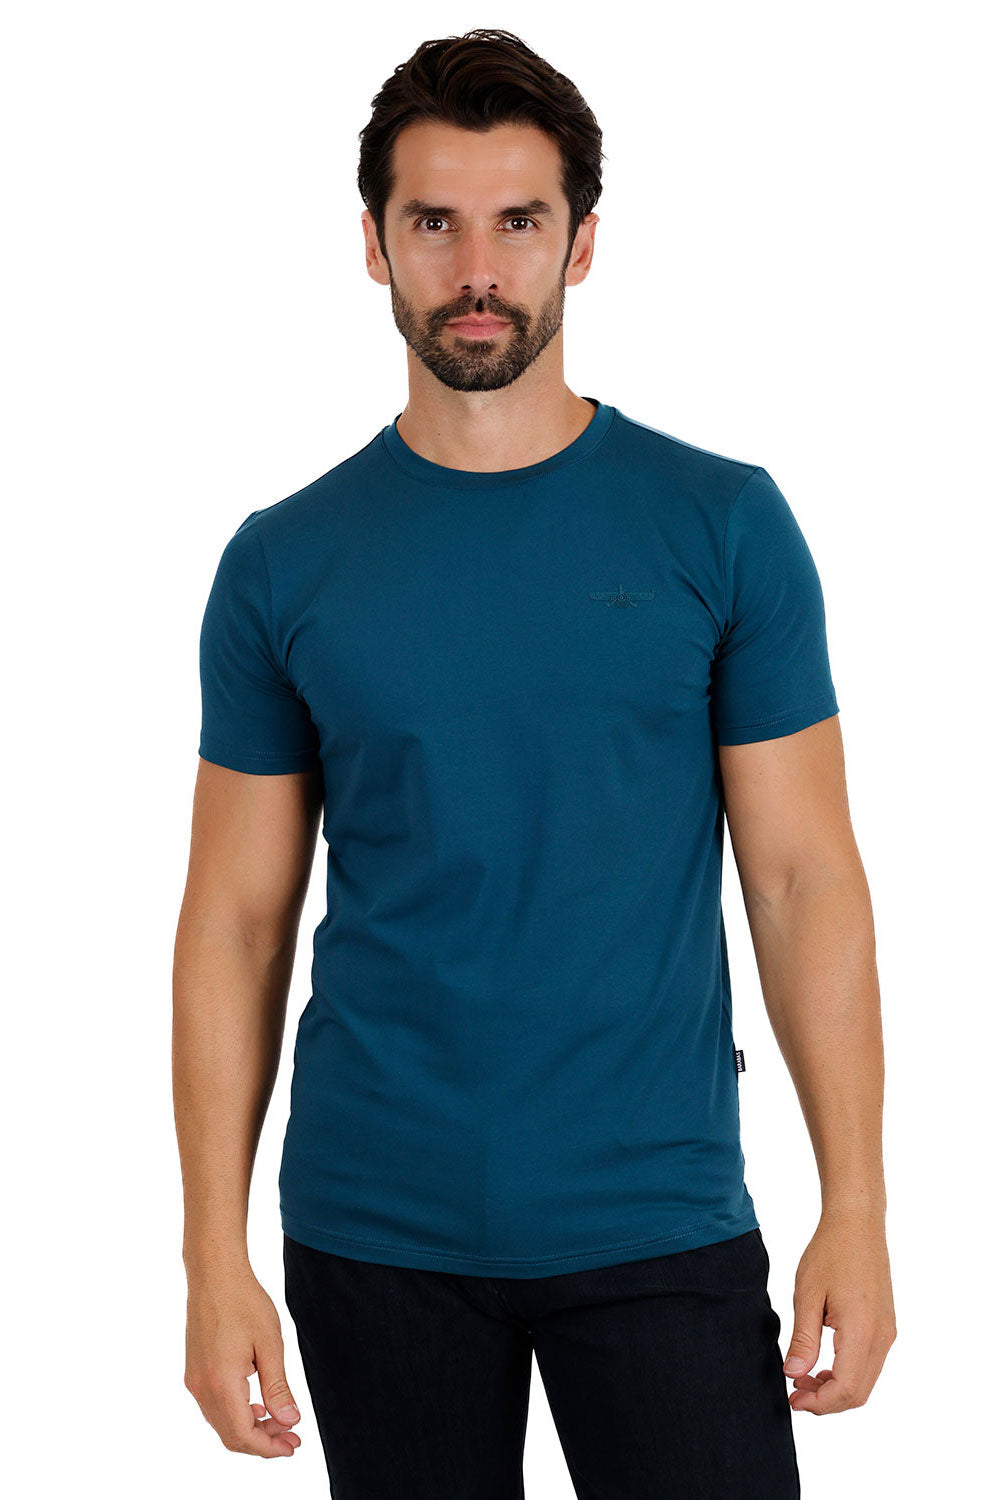 BARABAS Men's Basic Solid Color Crew-neck T-shirts ST933 Teal